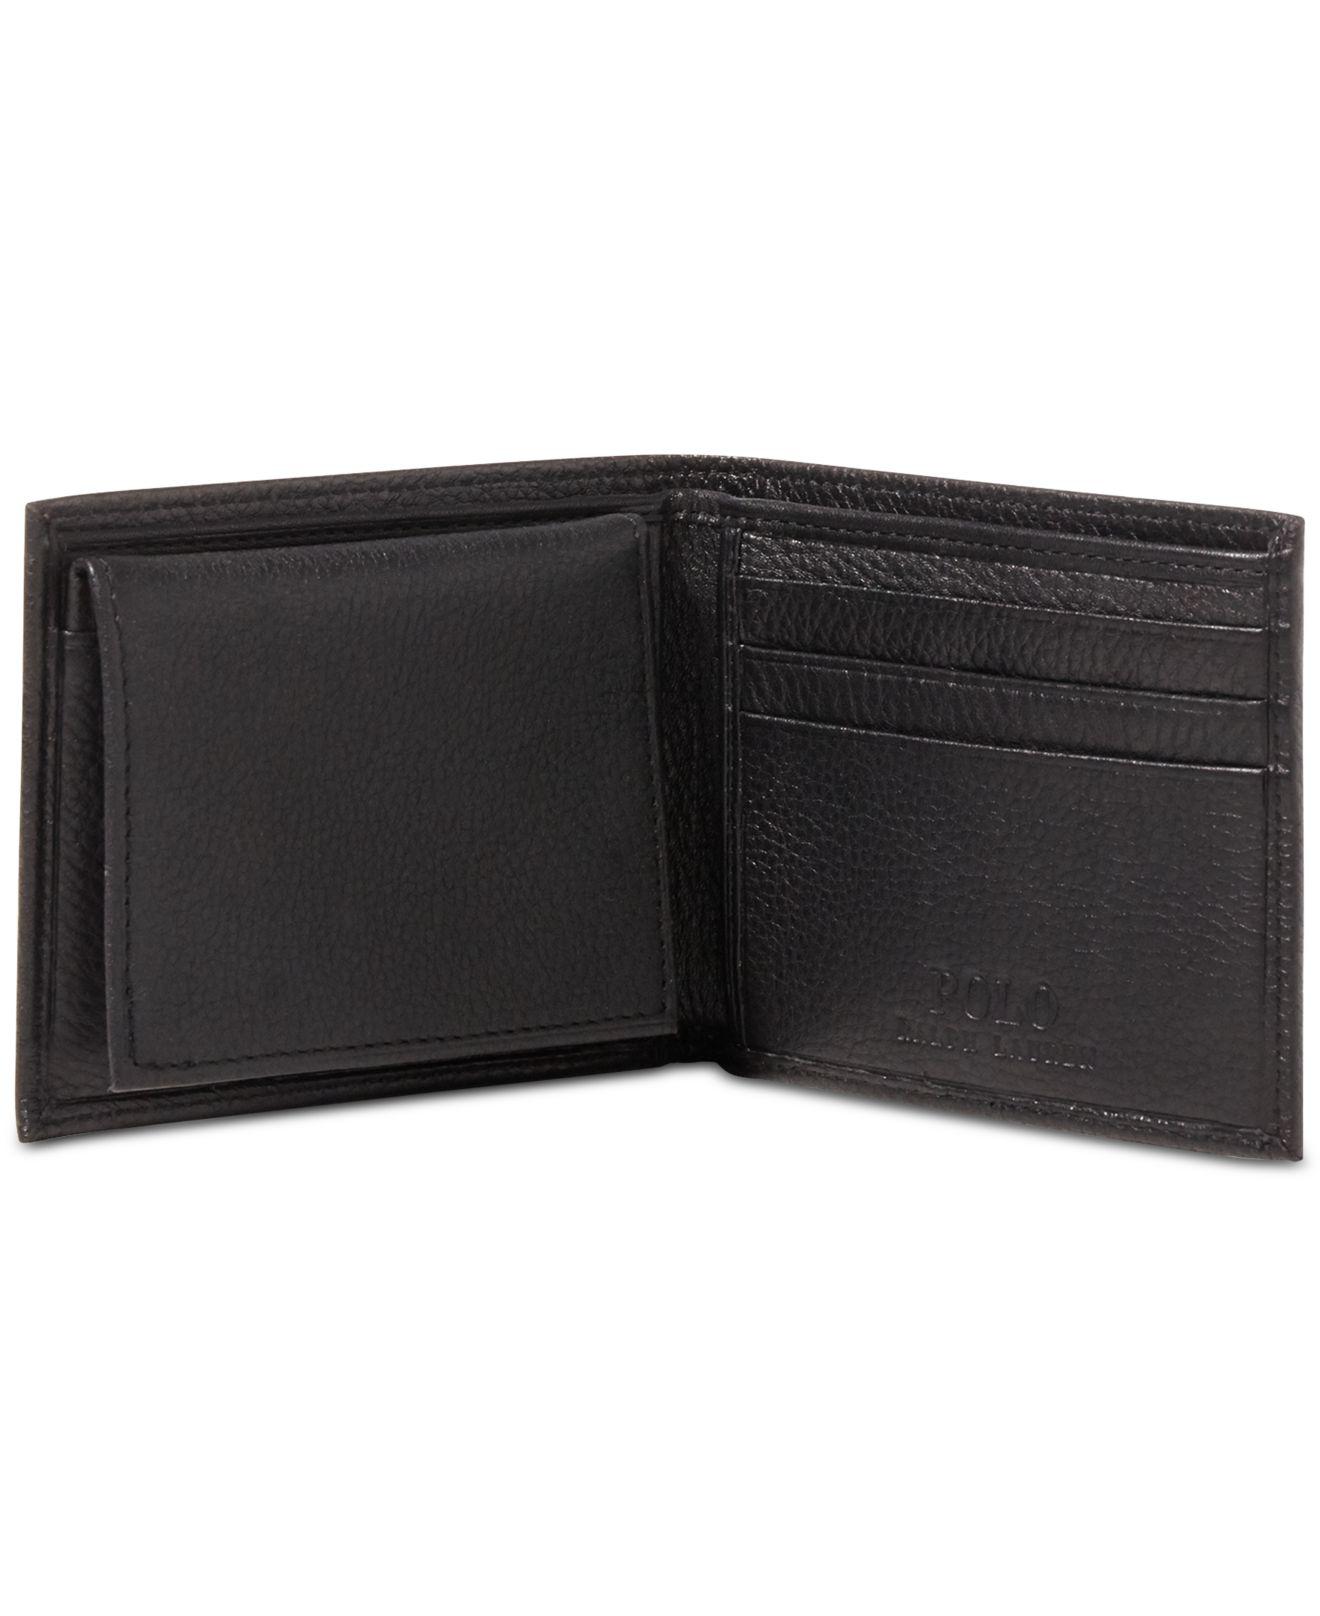 Polo Ralph Lauren Wallet, Pebbled Passcase in Black for Men - Lyst